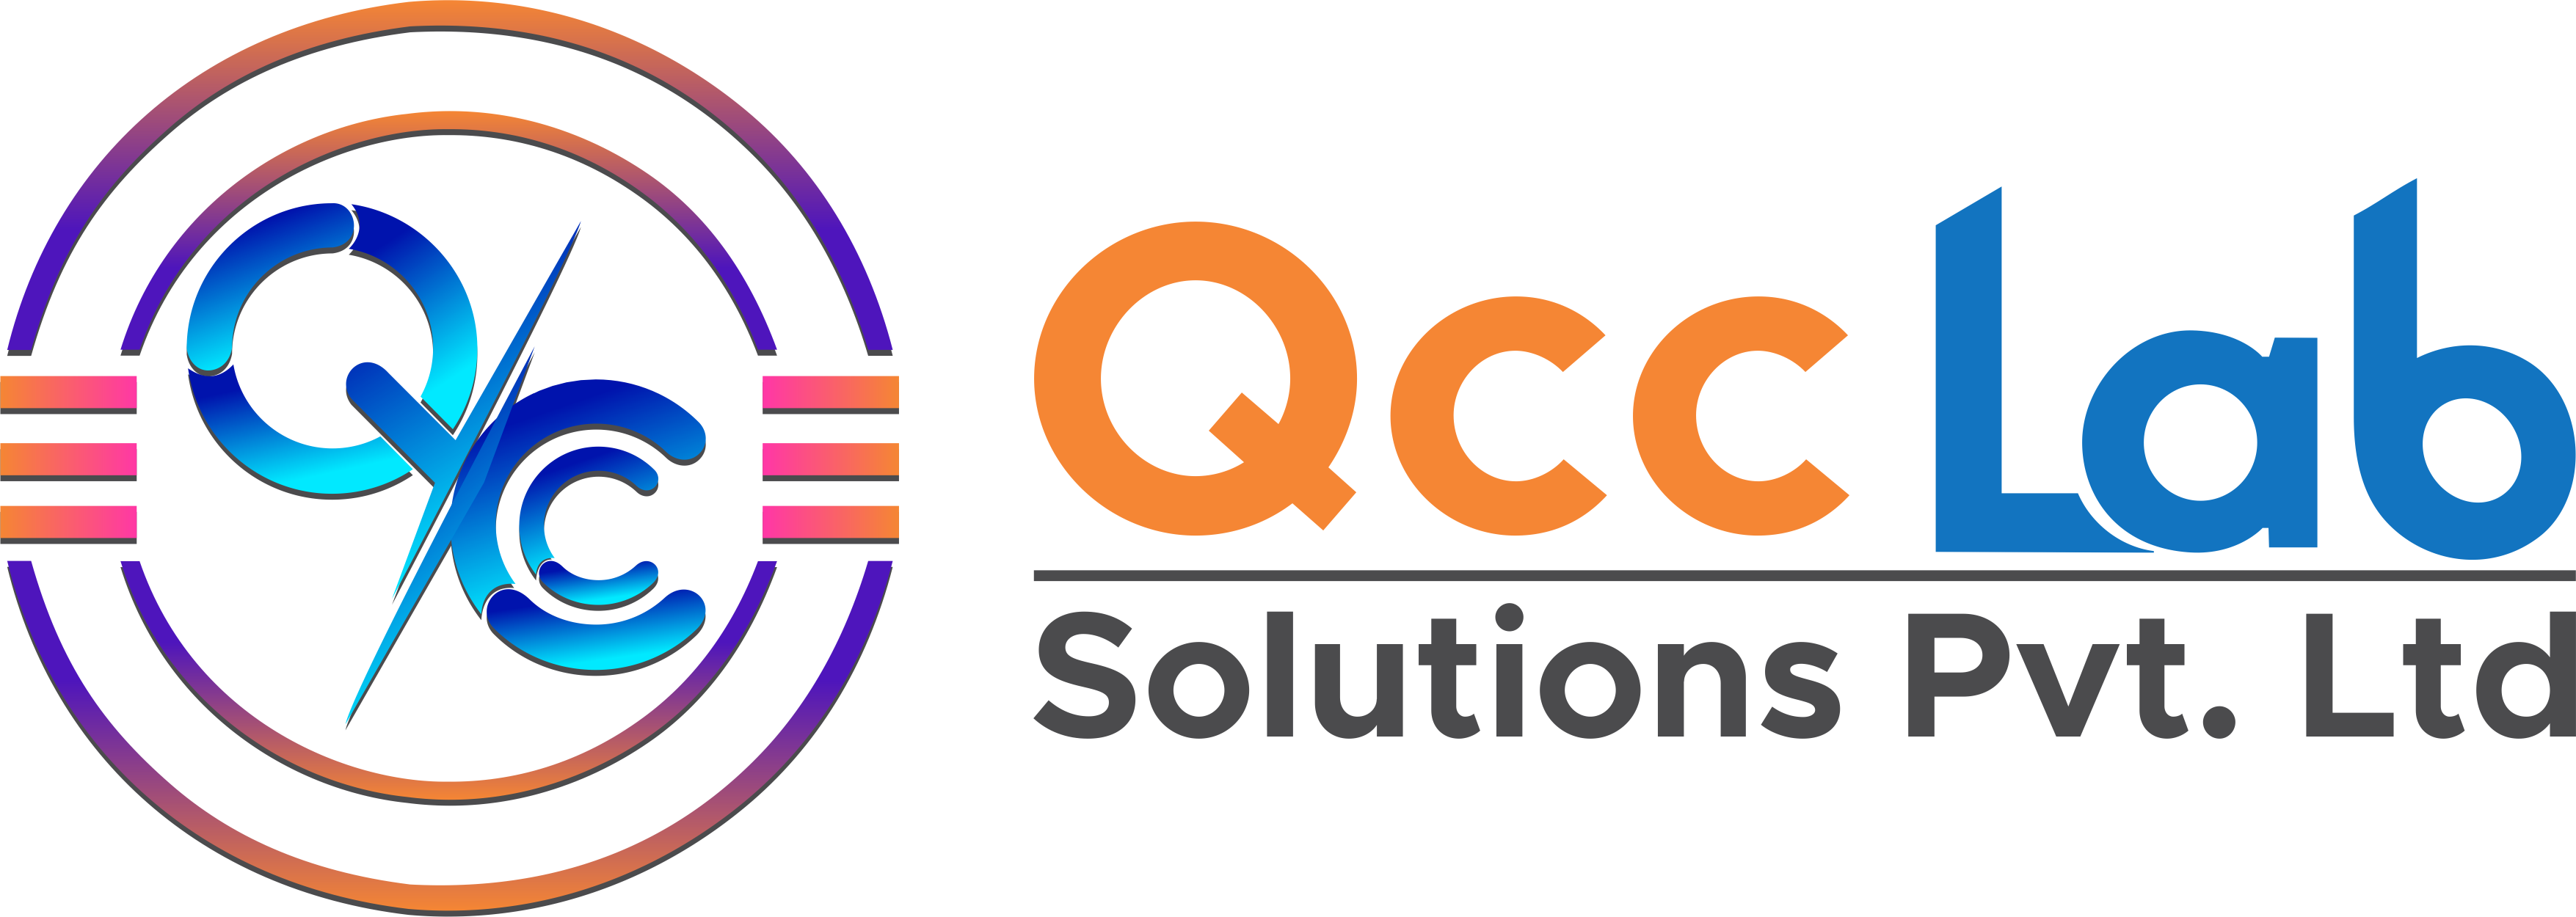 สัมมนา Online : การควบคุมคุณภาพด้วยกิจกรรม QCC